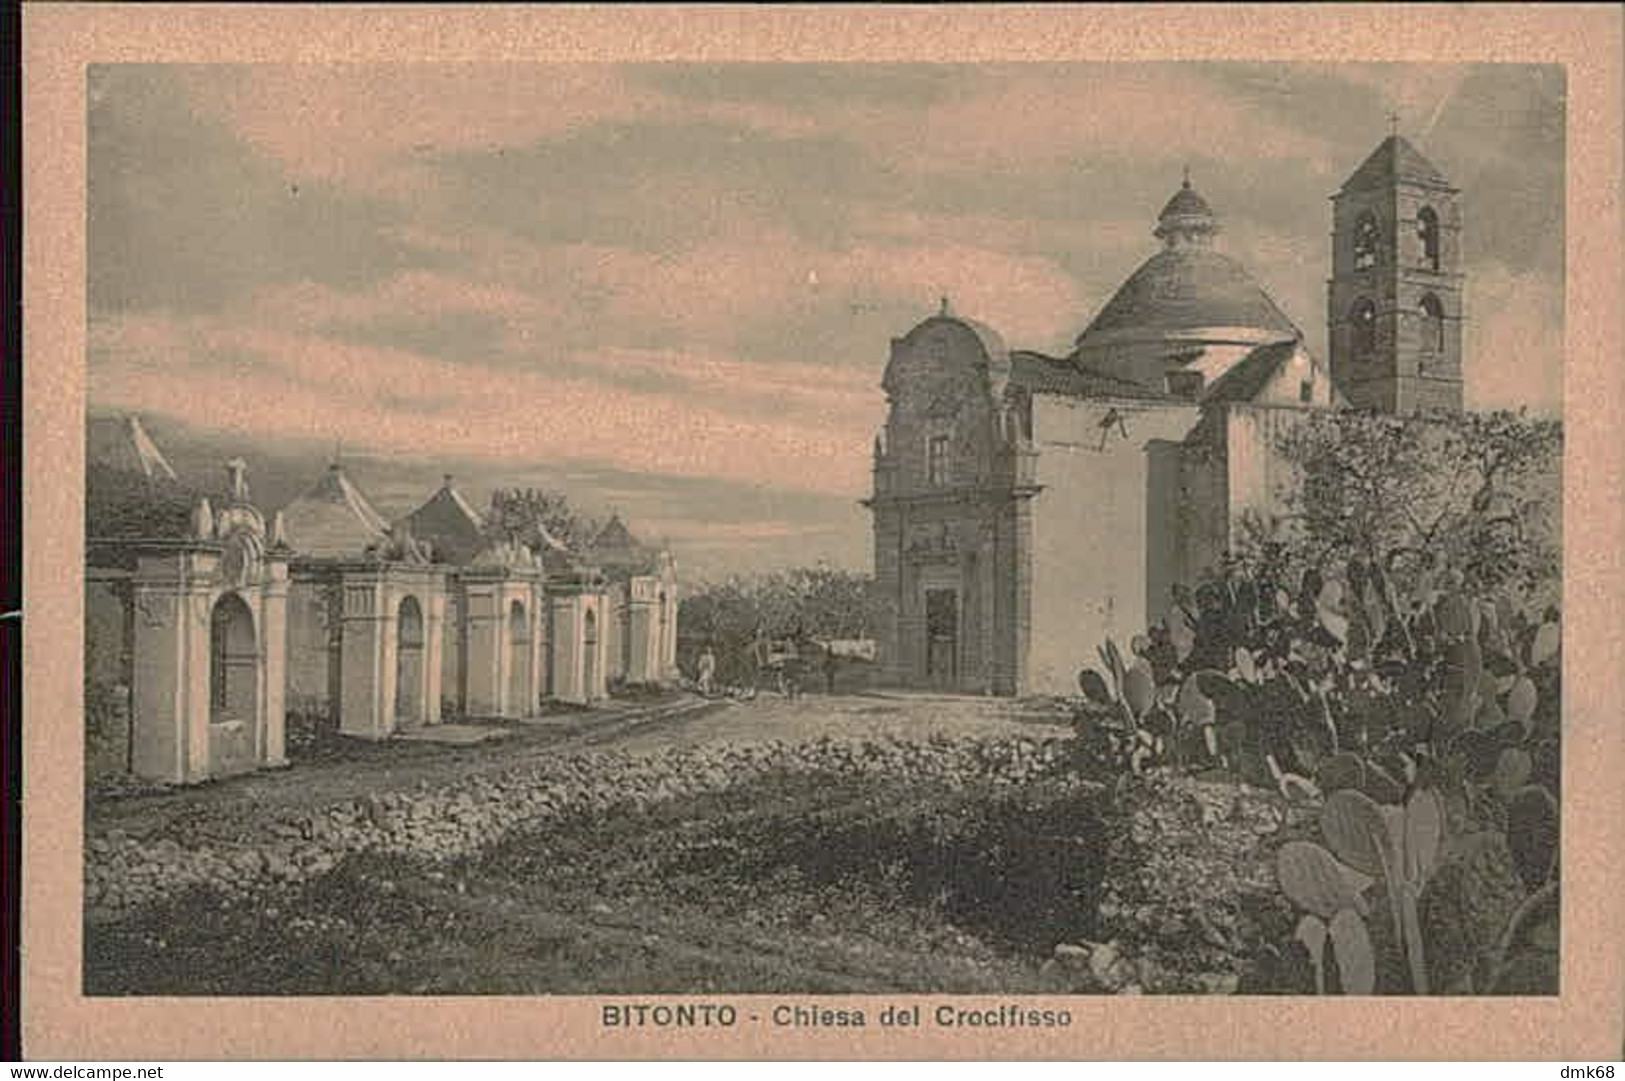 BITONTO - CHIESA DEL CROCIFISSO - EDIZIONE CUZZI - 1930s (12416) - Bitonto